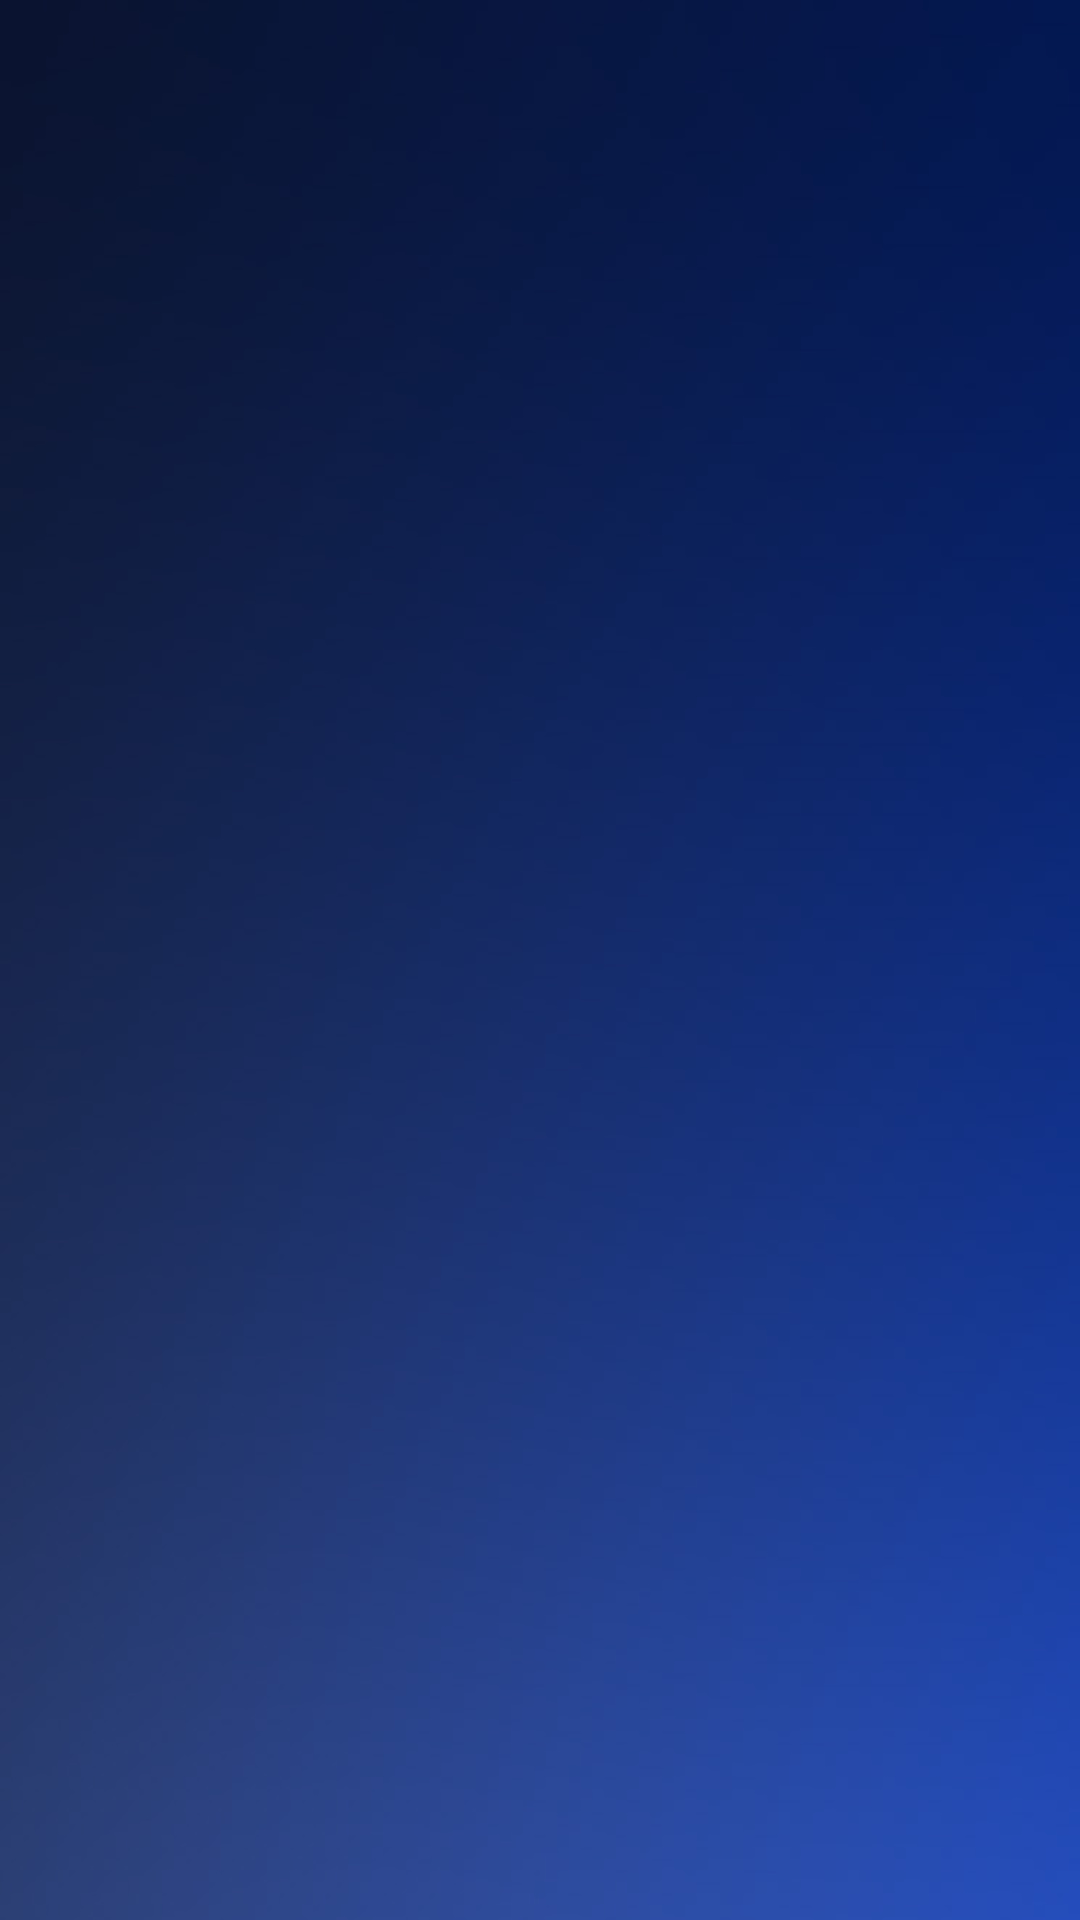 Pure Dark Blue Ocean Gradation Blur Background iPhone 6 Wallpaper